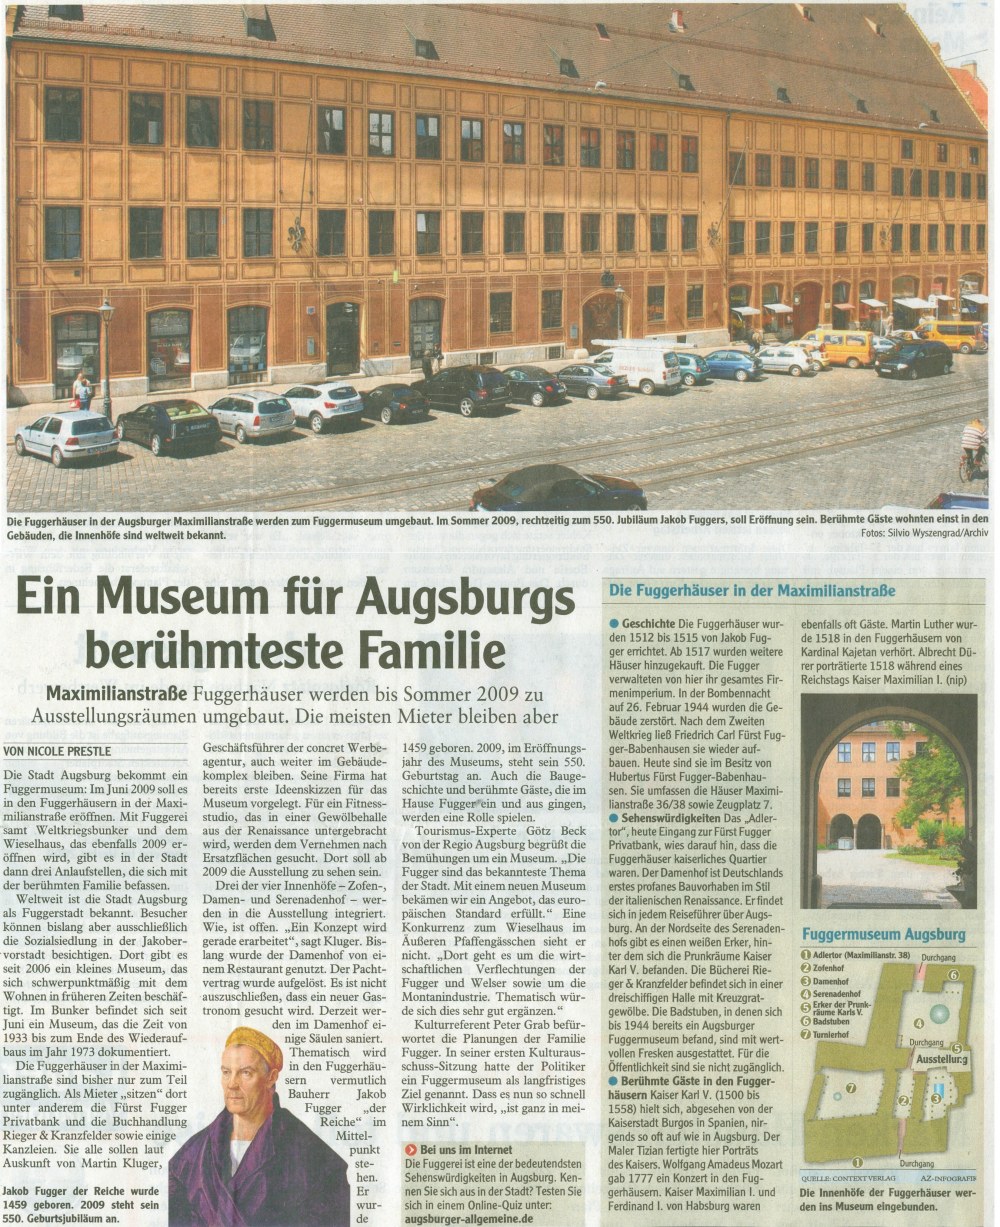 Plan zu Fuggermuseum